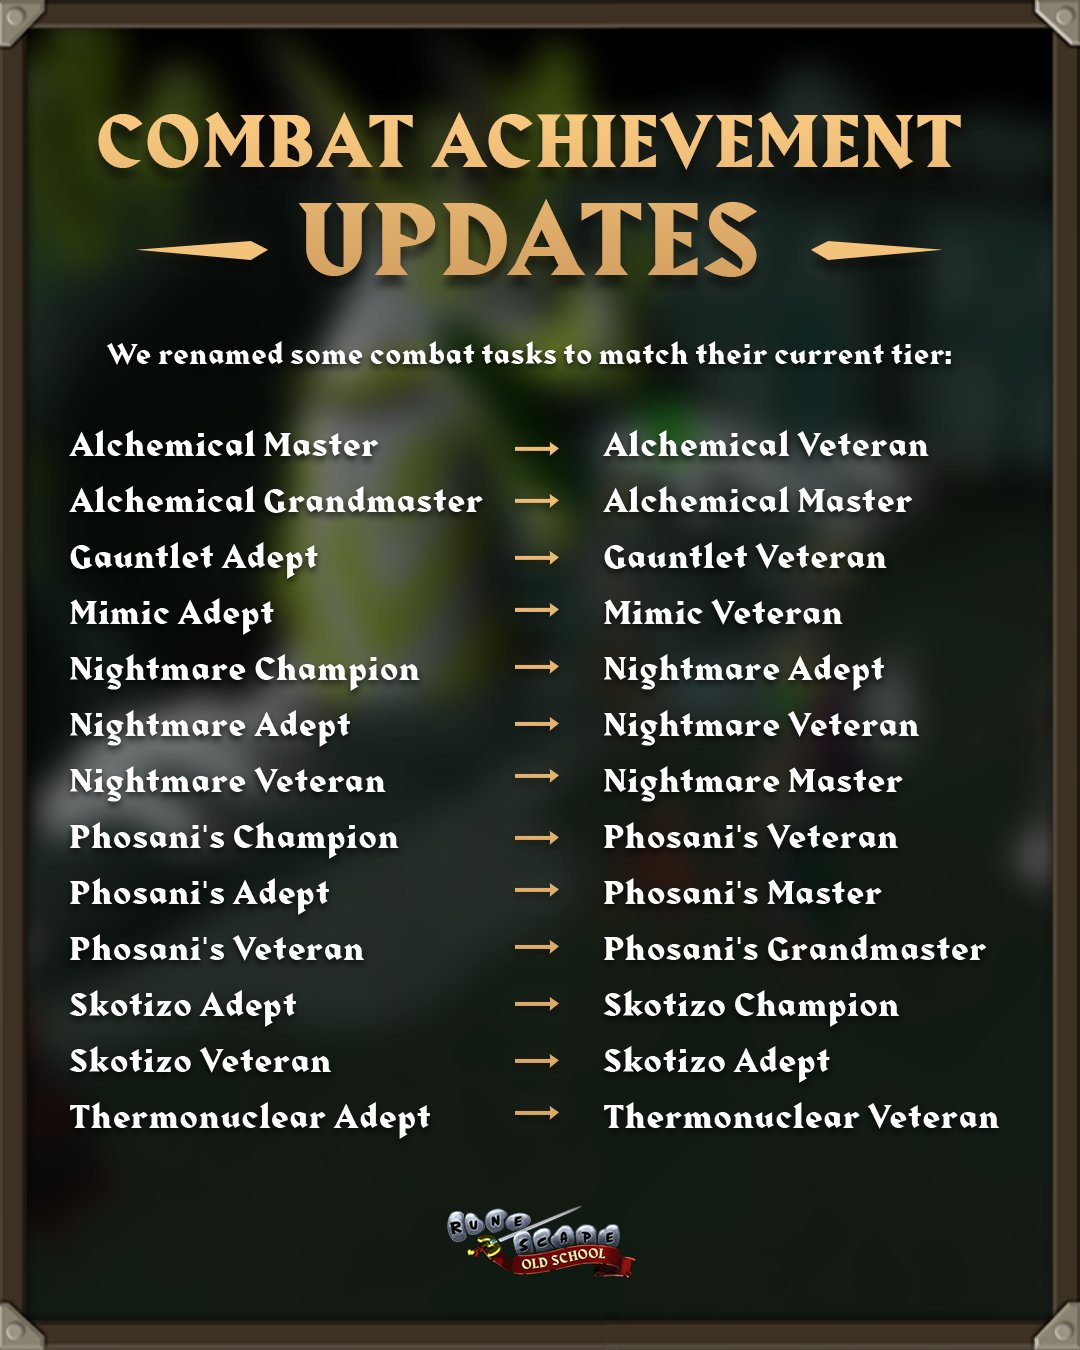 Combat Achievements - Name Changes